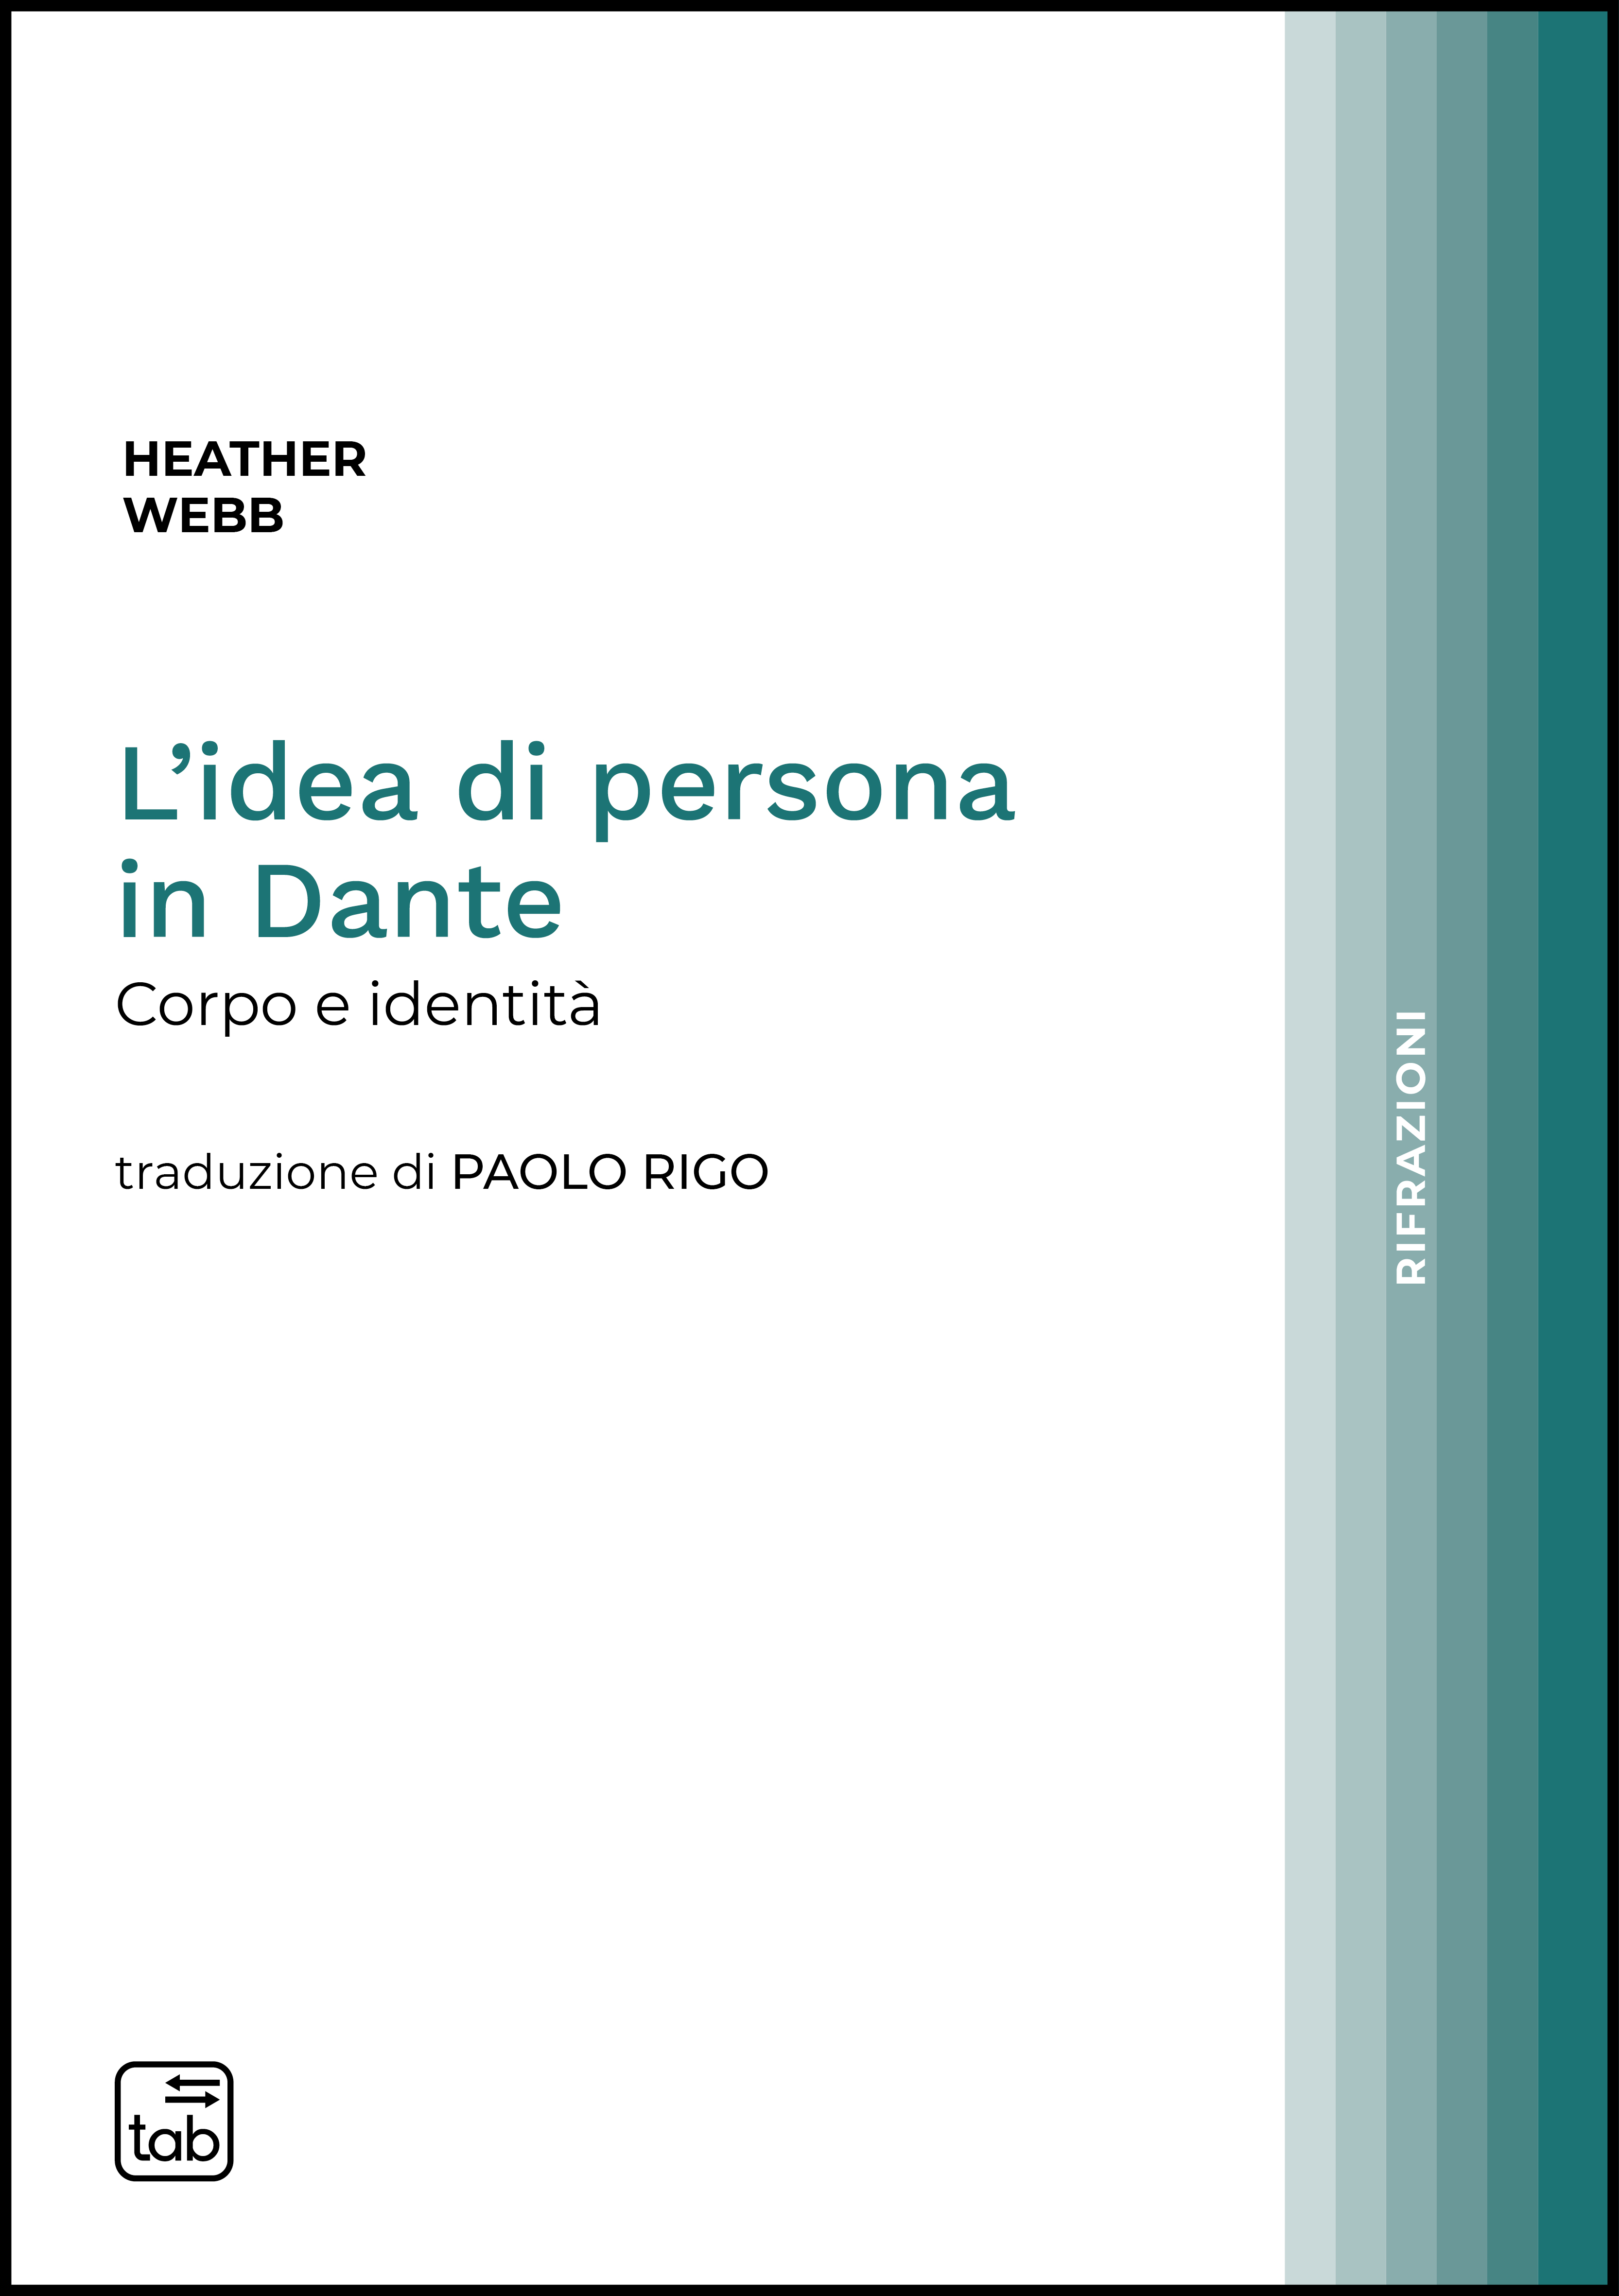 L'idea di persona in Dante